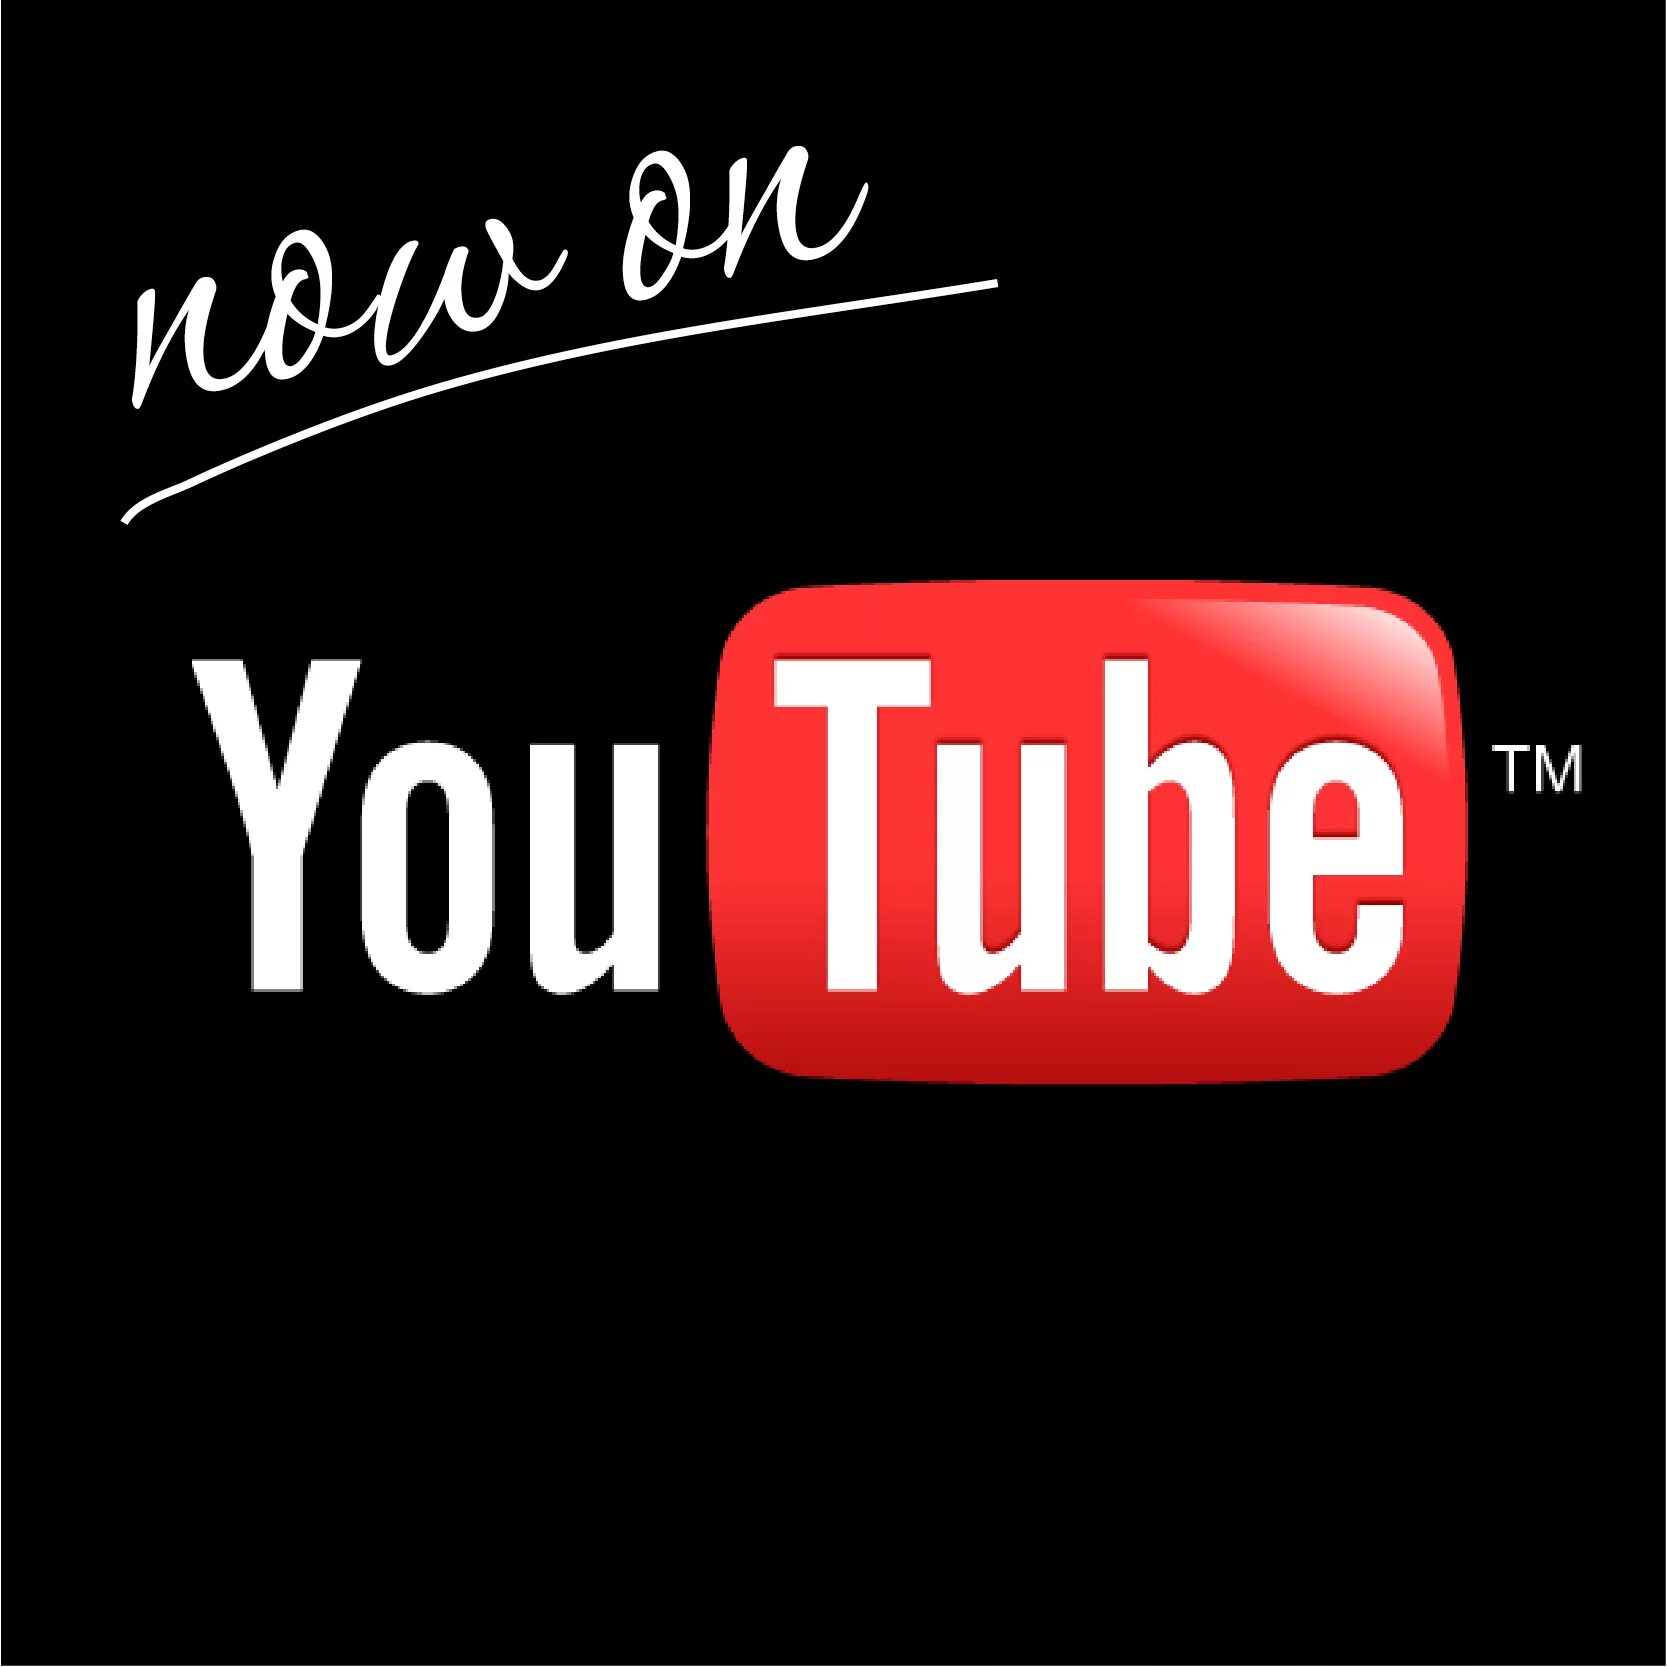 Ne официальная страница ютуб com. ЮТП. Youtube фото. Эмблема ютуб. Новый логотип ютуб.